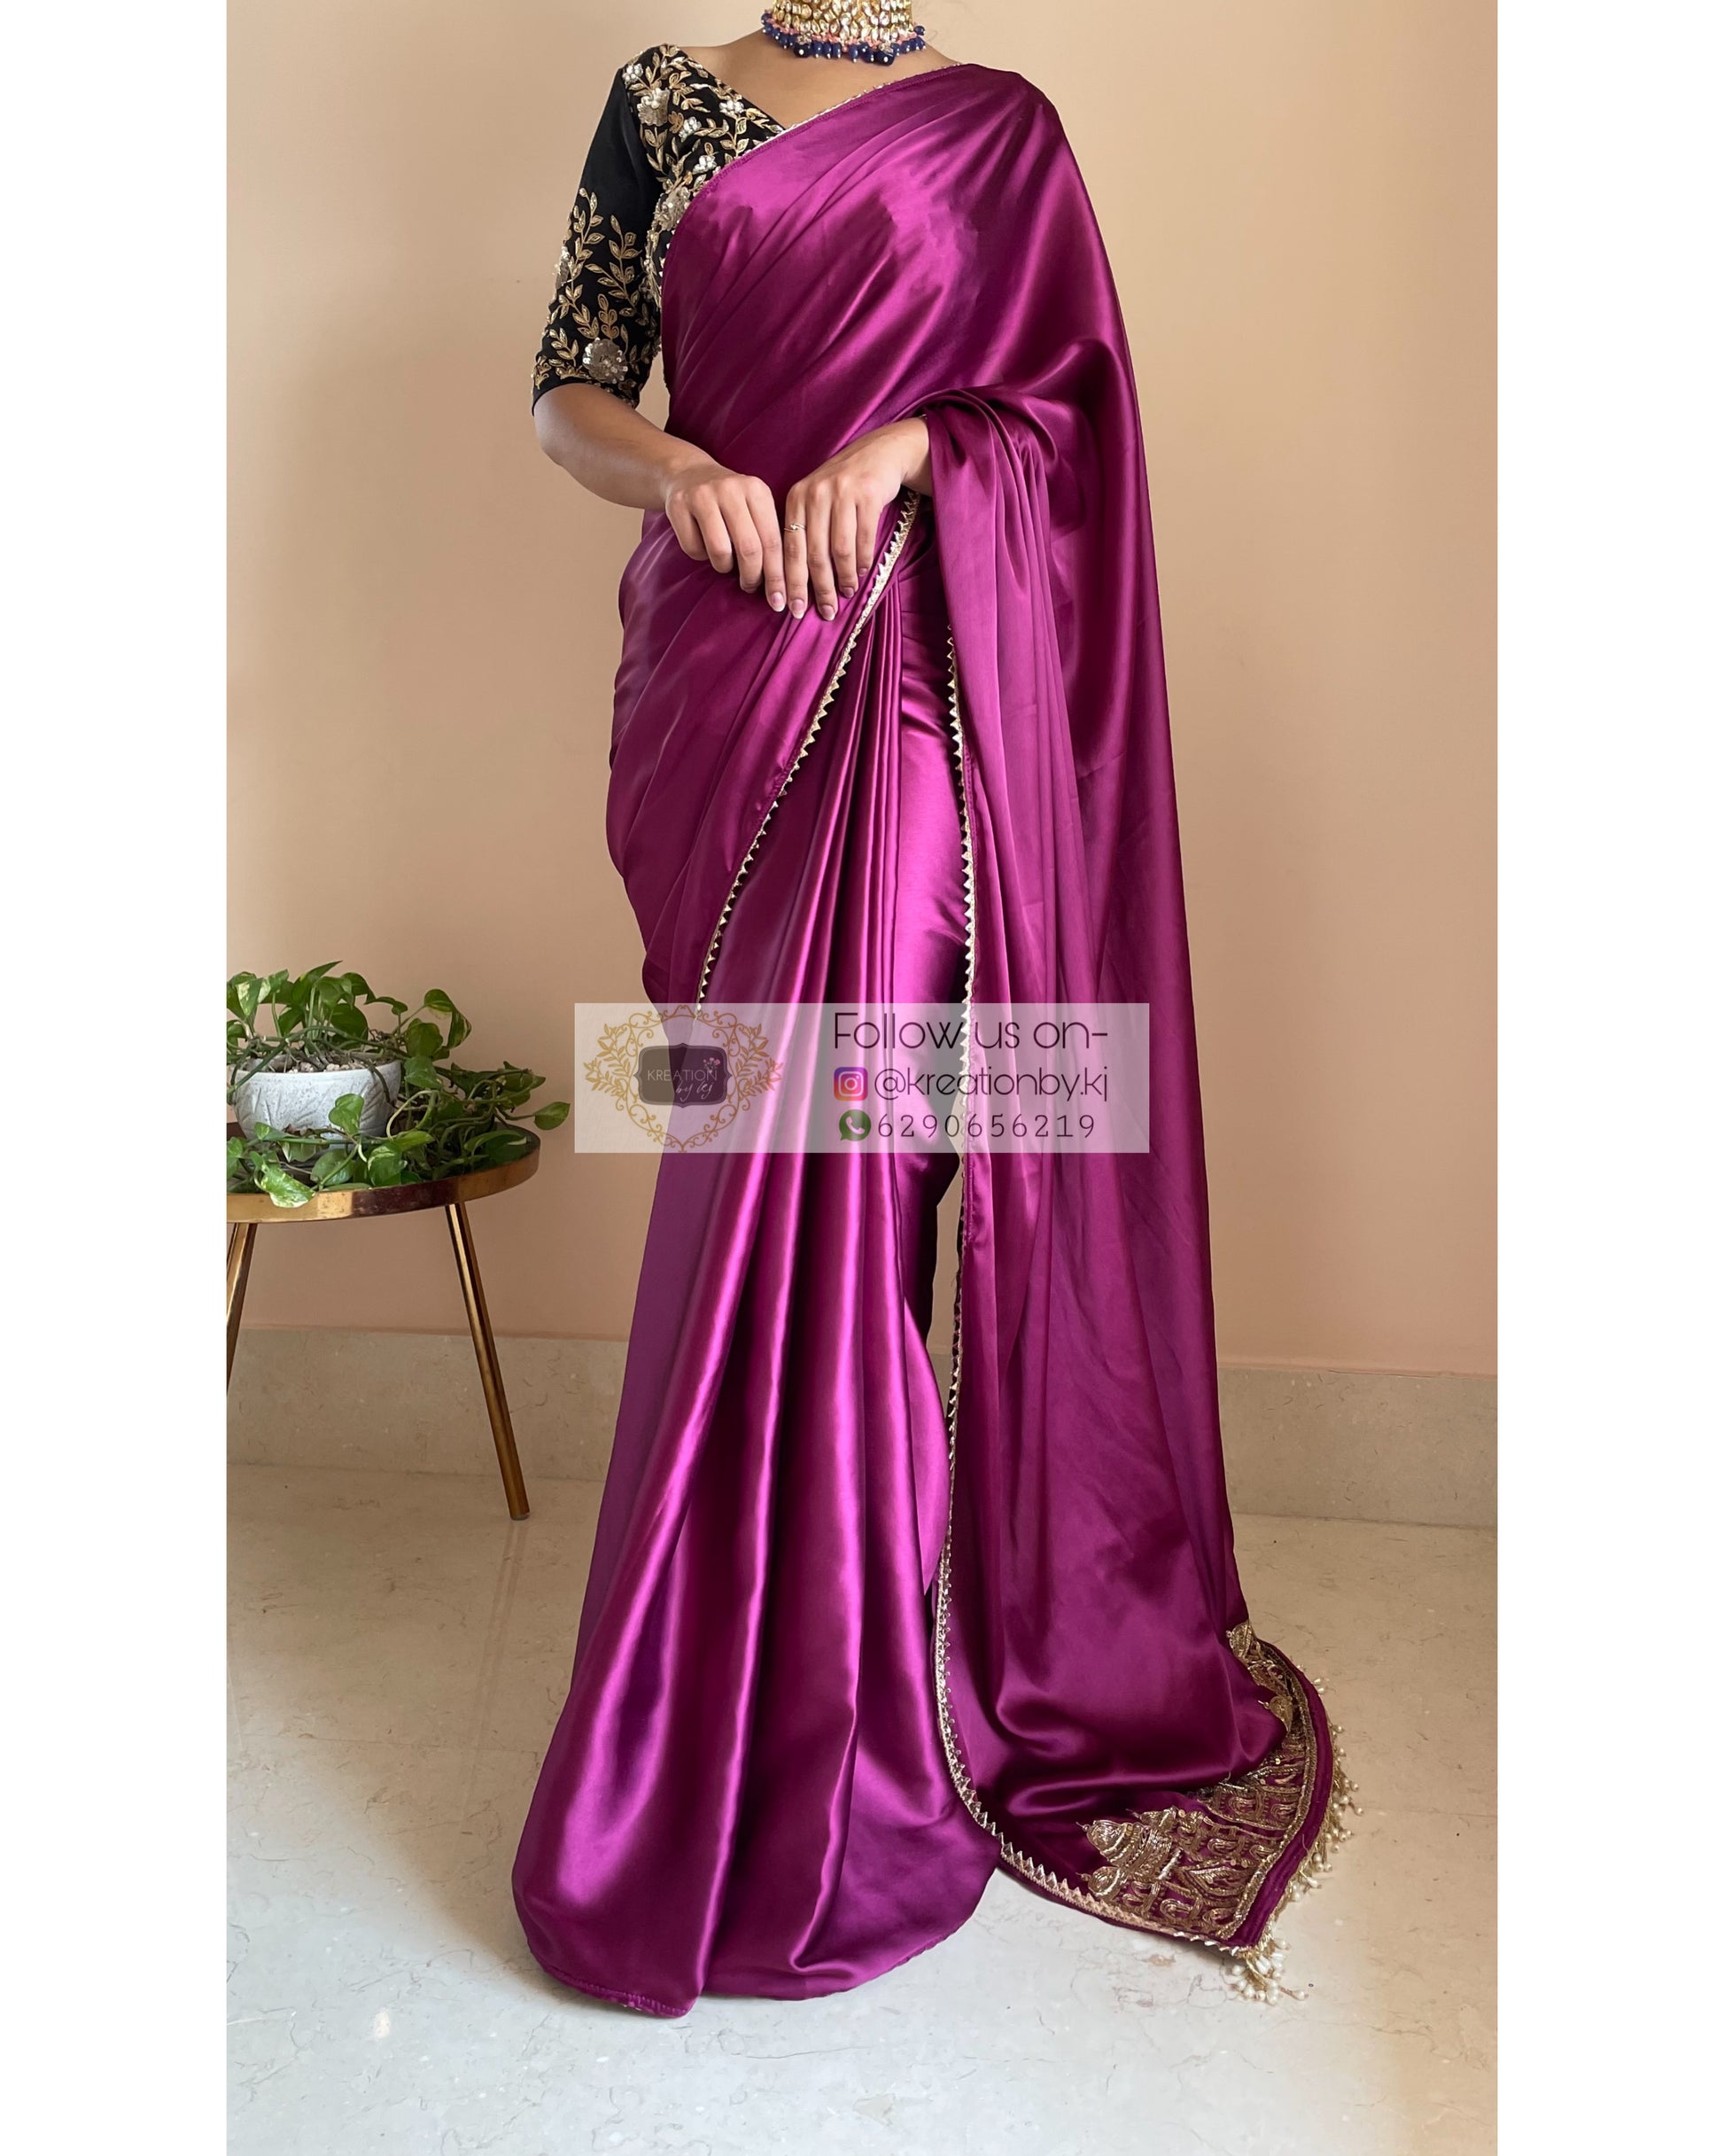 Dark Purple Satin Silk Taj Mahal Saree - kreationbykj